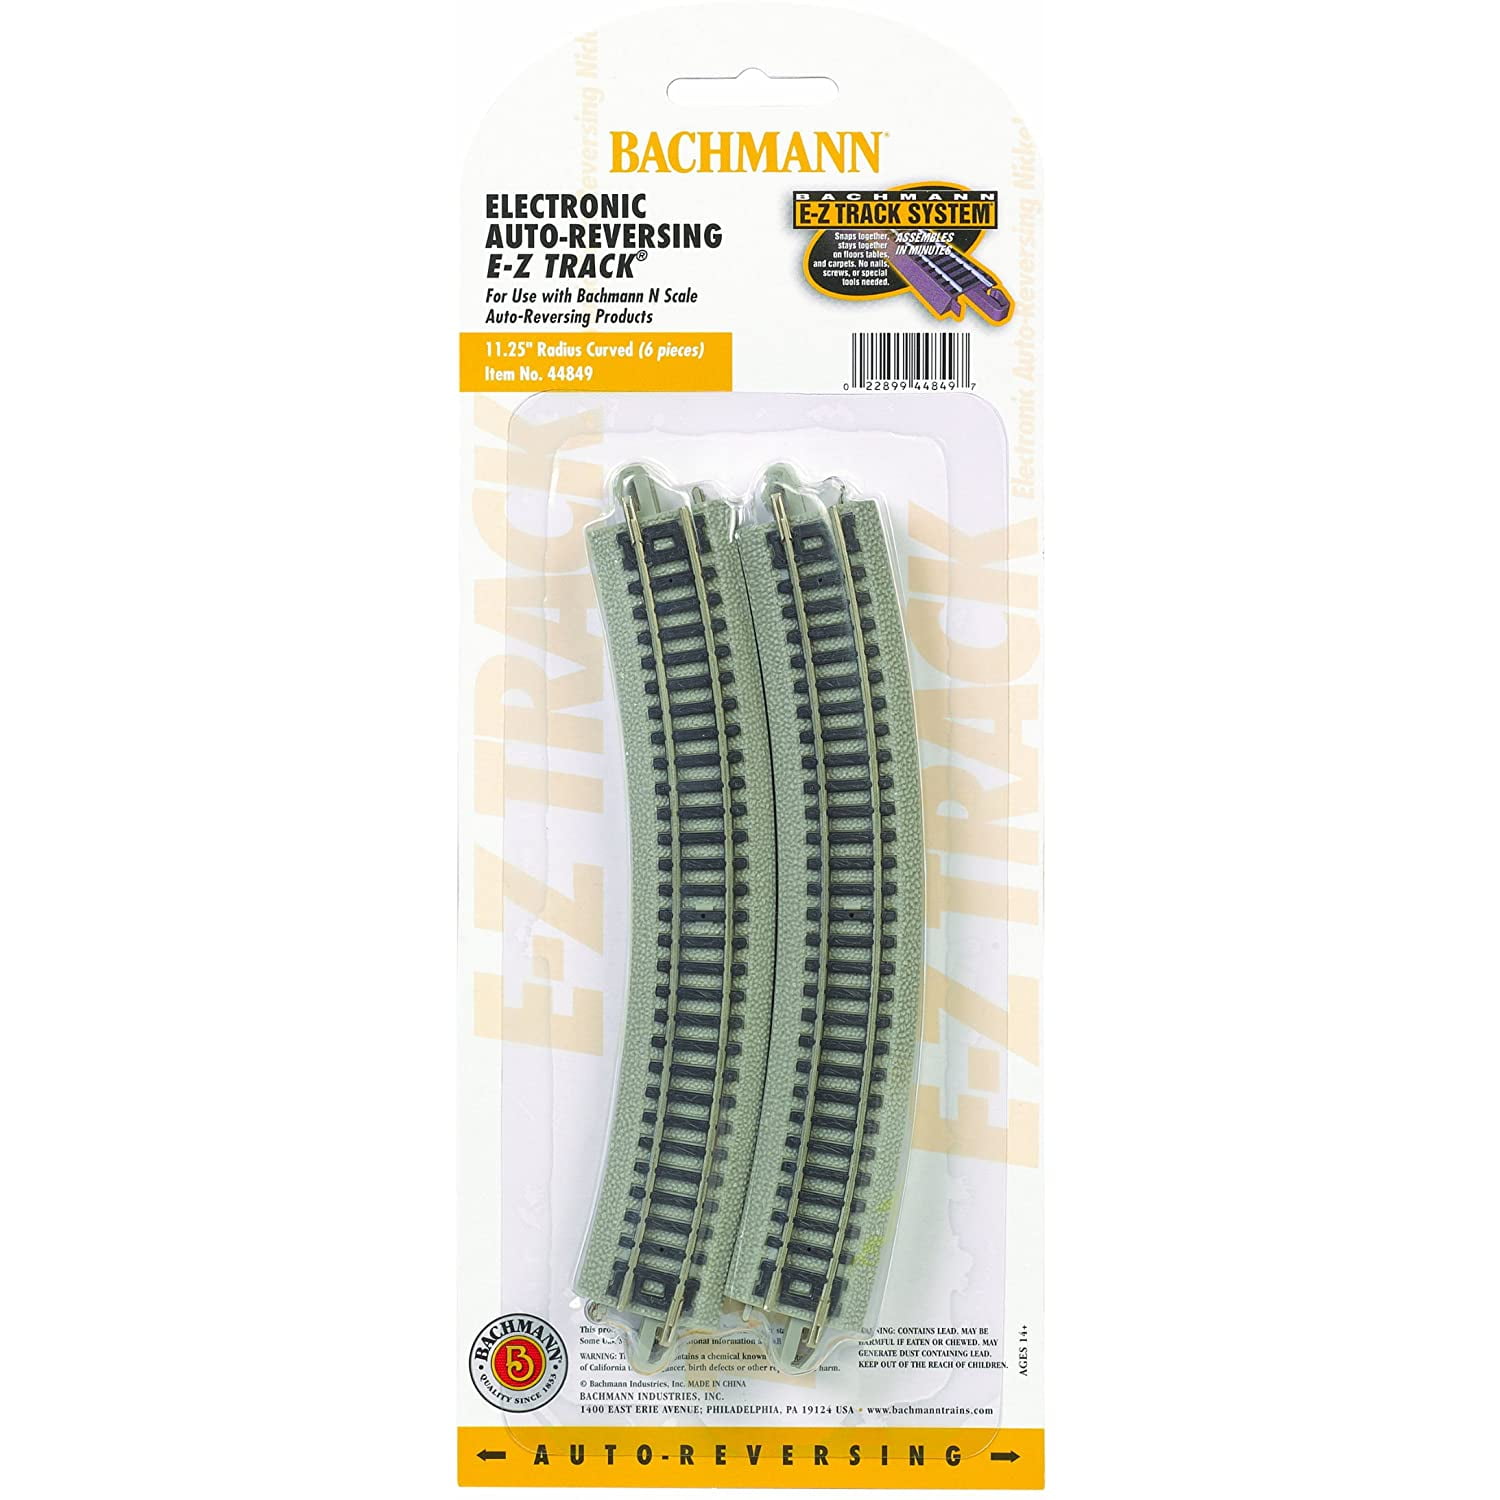 NEW Bachmann 11-1/4" Radius Nickel Silver Track Set 25 N Scale BAC44880 x25 